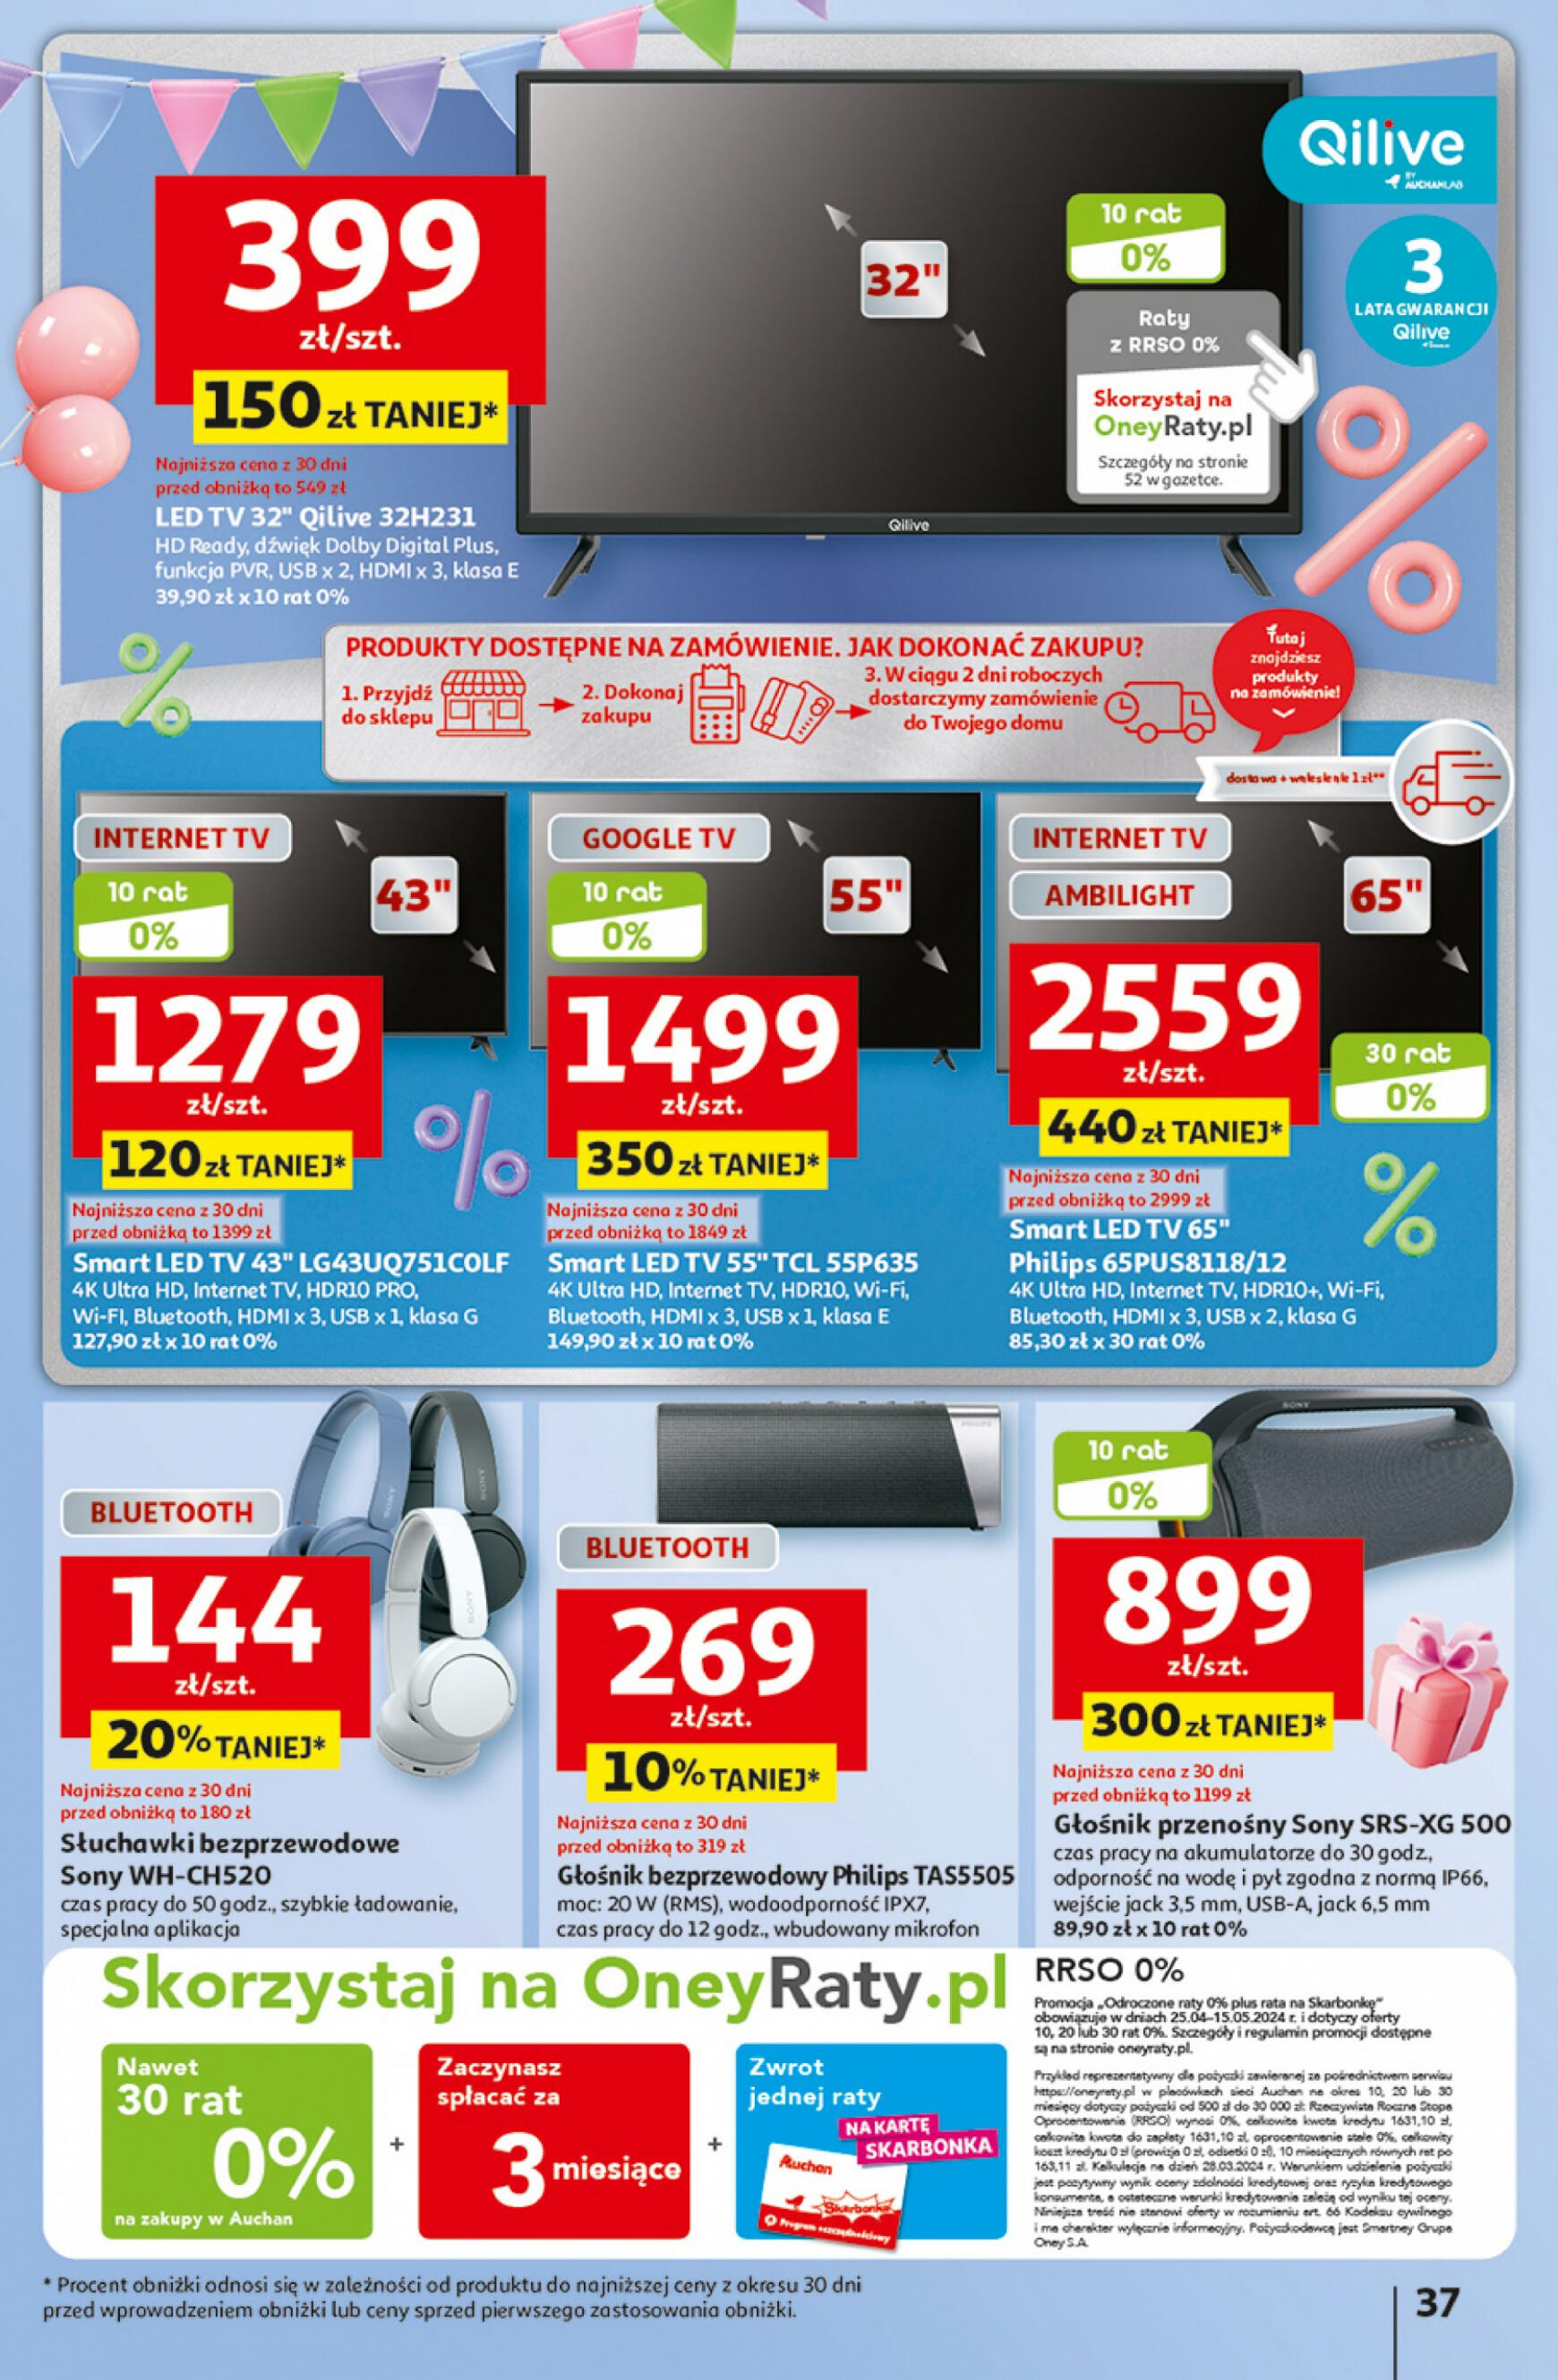 auchan - Hipermarket Auchan - Gazetka Jeszcze taniej na urodziny gazetka aktualna ważna od 25.04. - 30.04. - page: 37